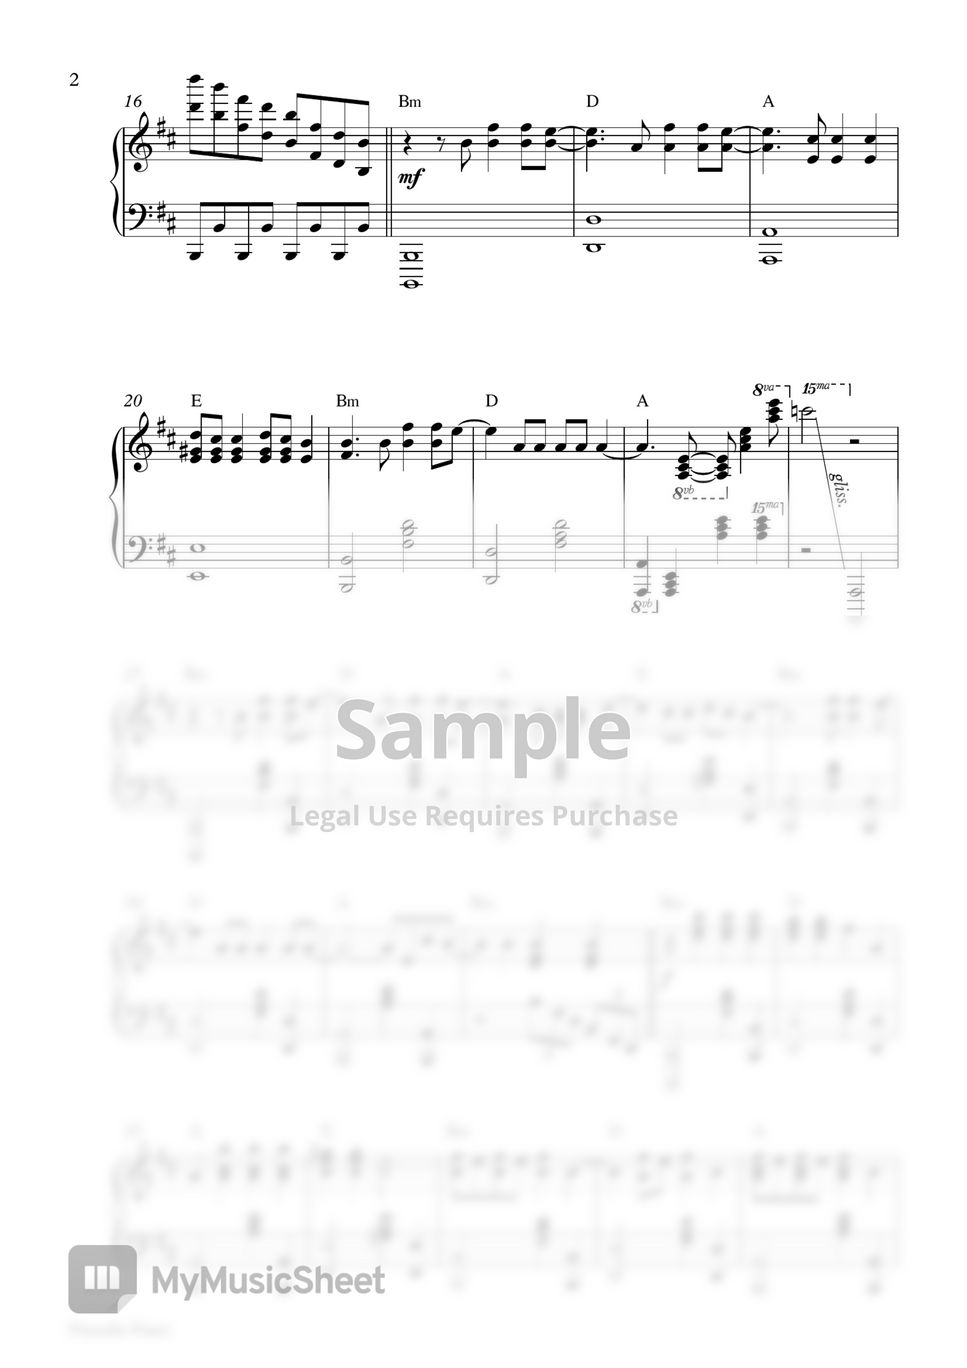 Imagine Dragons - Radioactive (Piano Sheet) by Pianella Piano